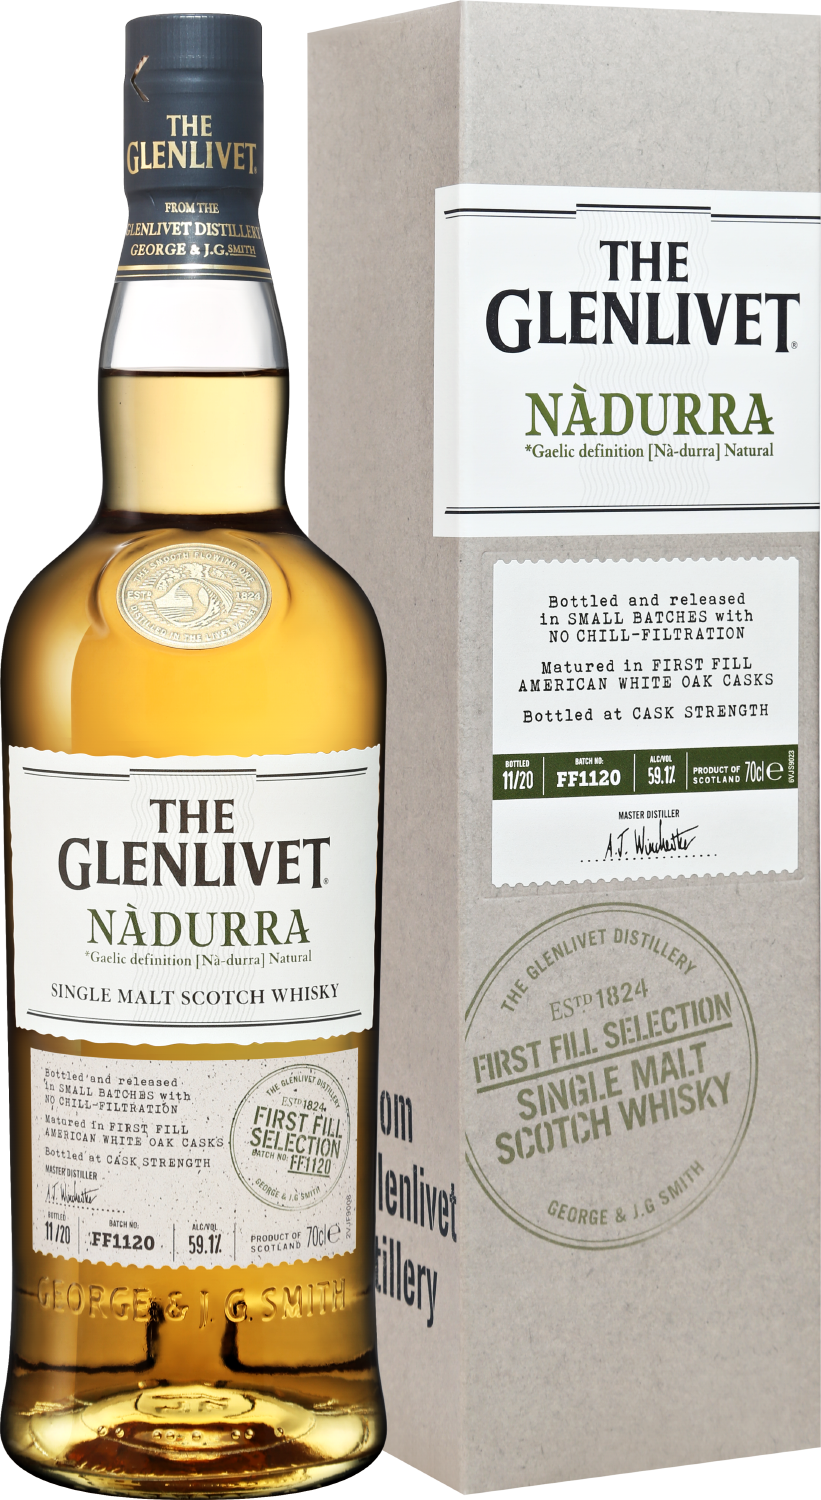 The Glenlivet Nadurra First Fill Selection Single Malt Scotch Whisky (gift box) the glenlivet single malt scotch whisky 18 y o gift box